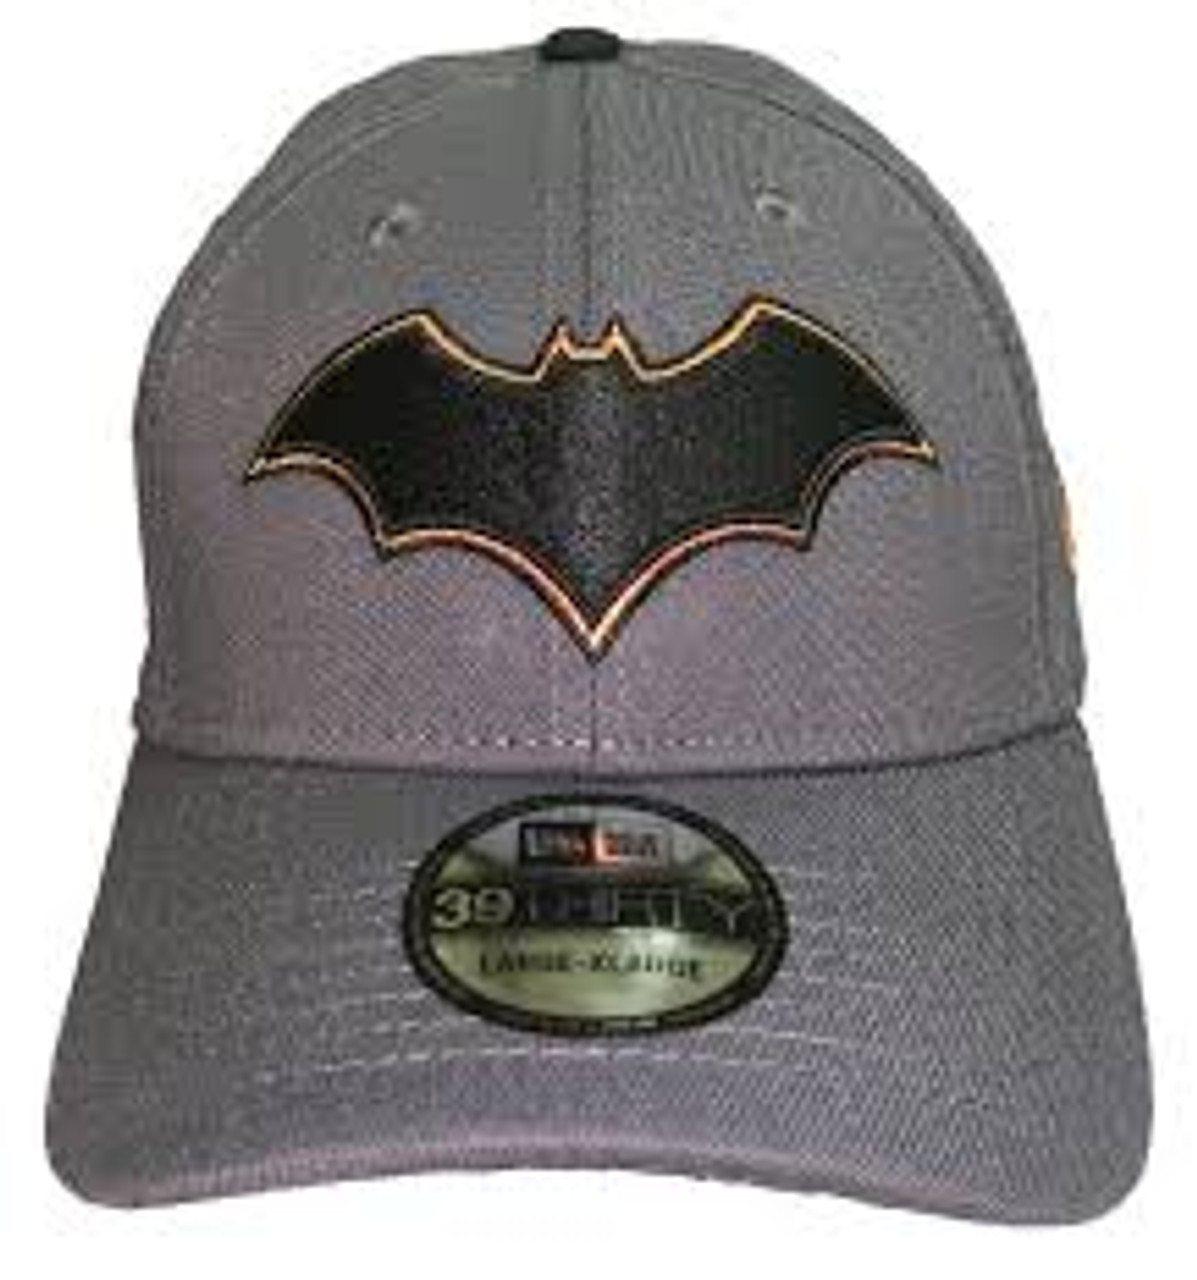 batman new era cap